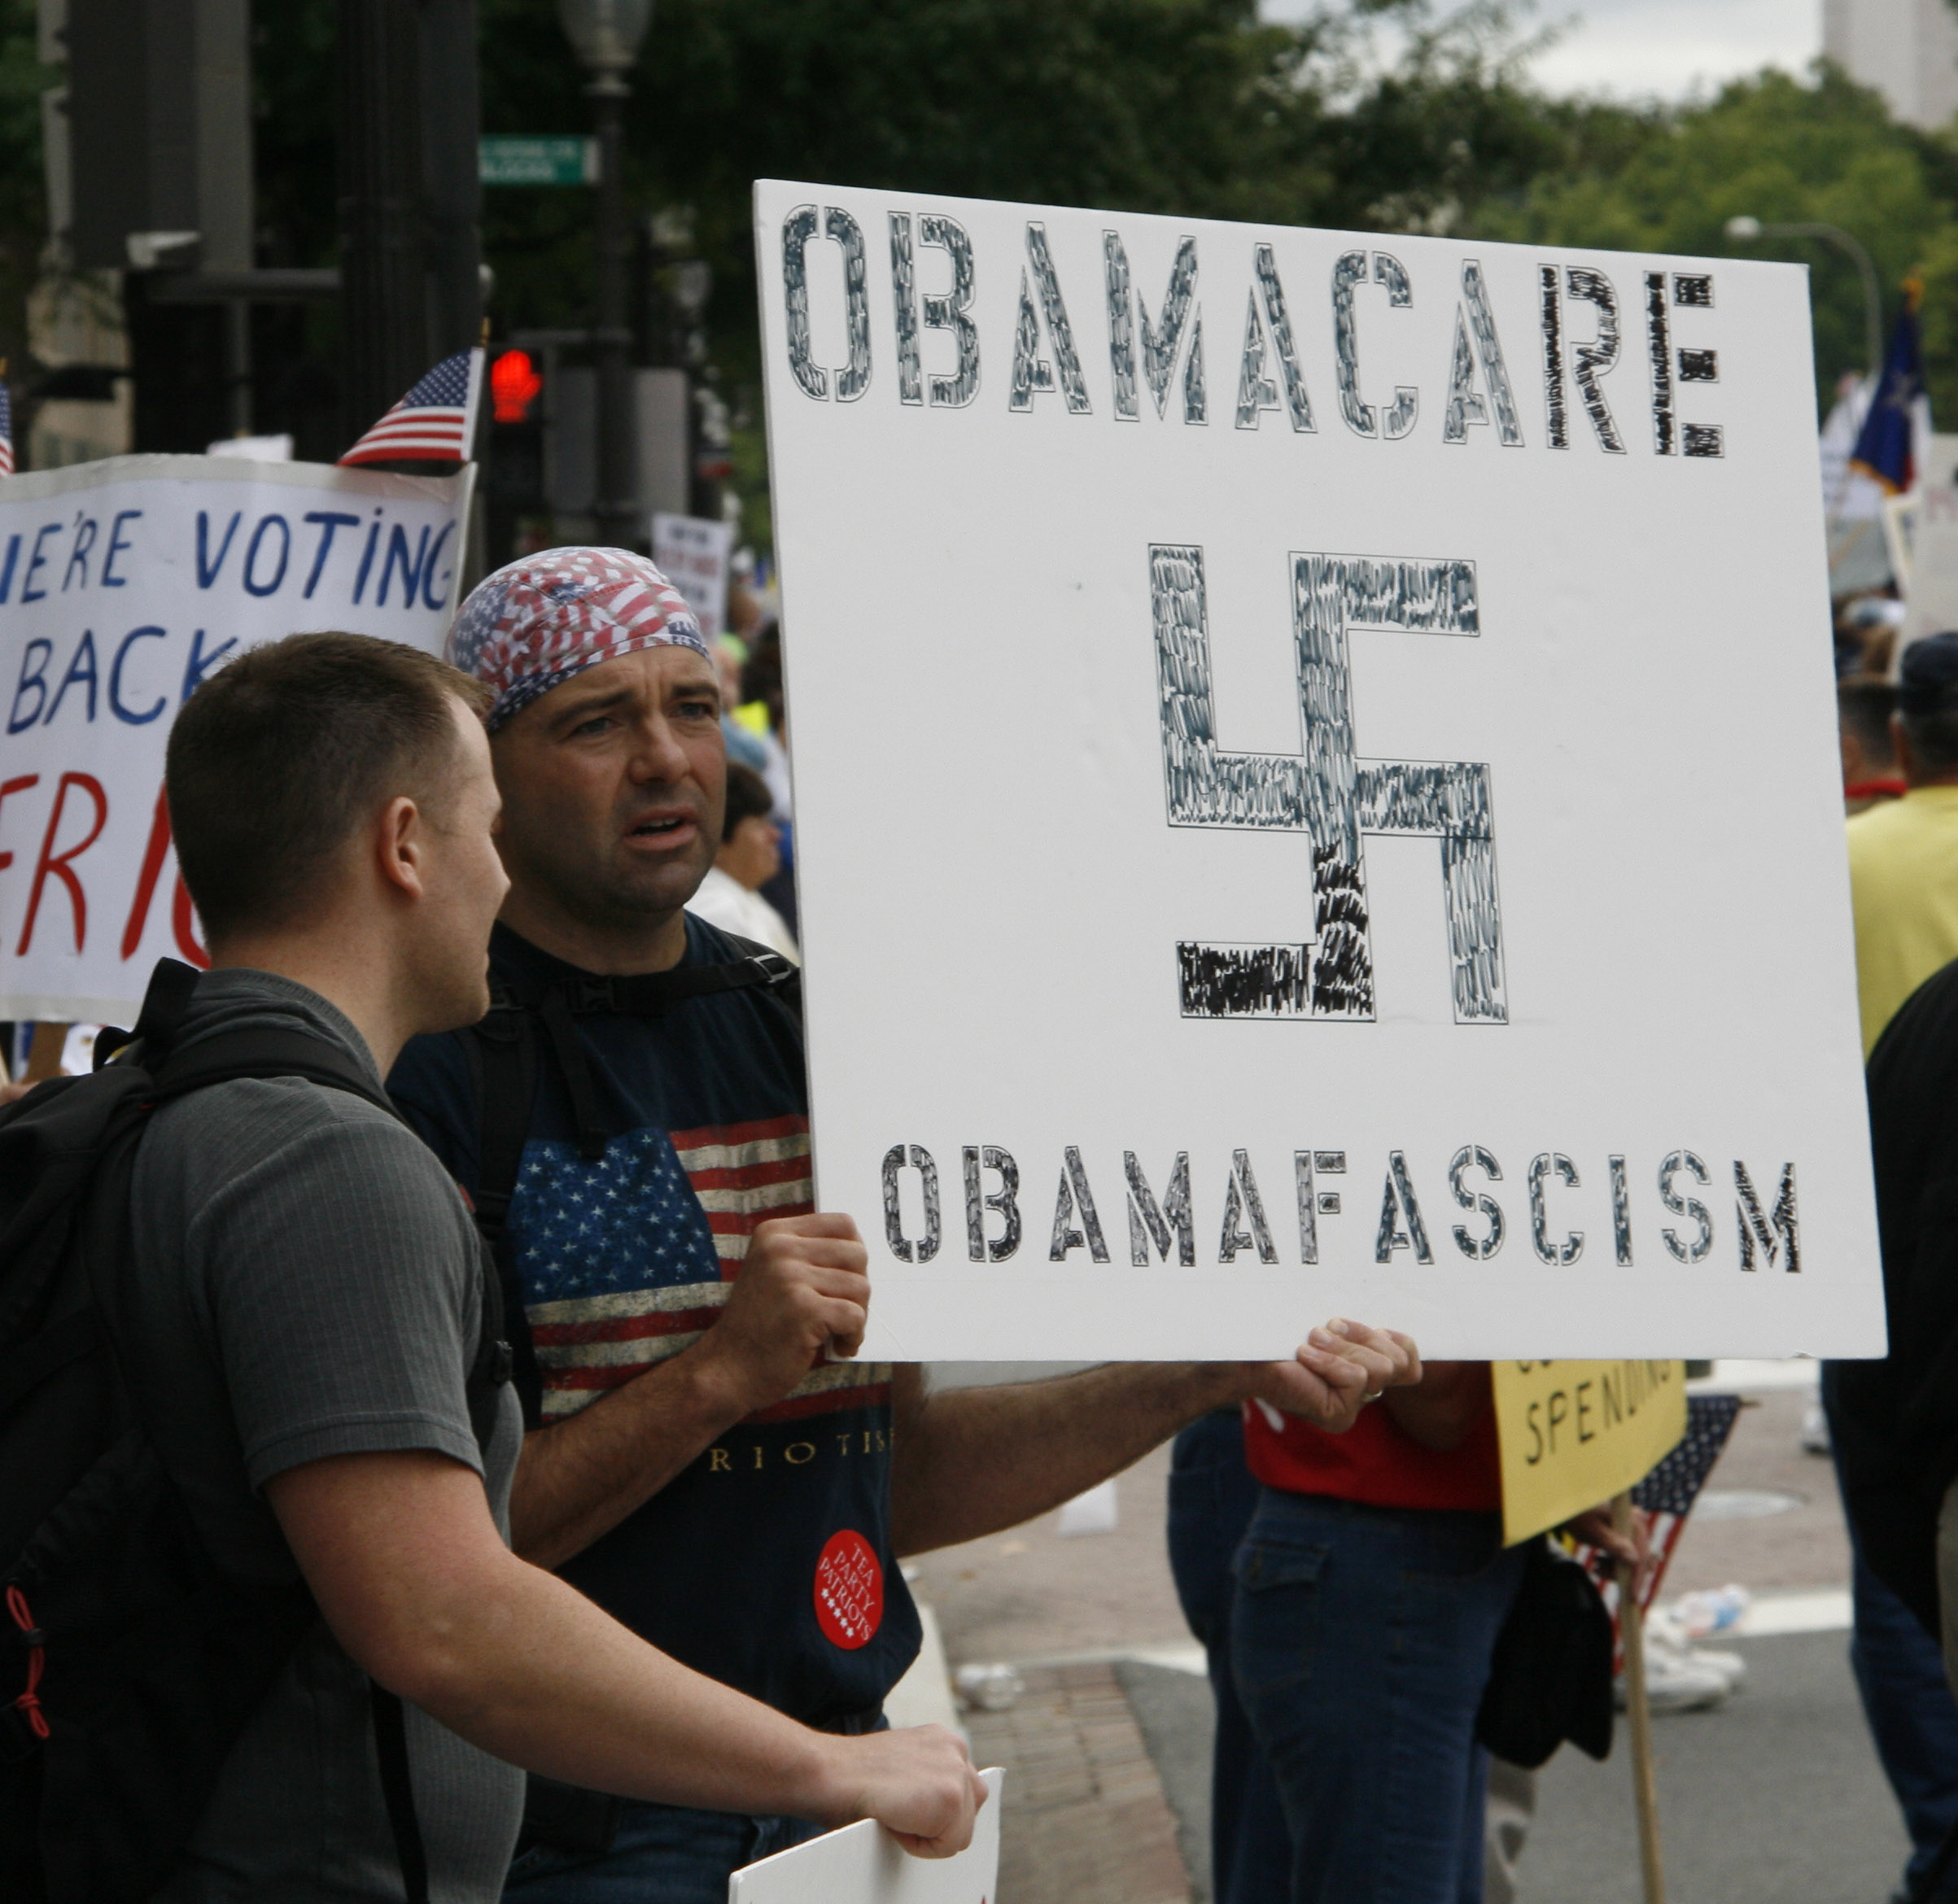 Obama-Nazi_comparison_-_Tea_Party_protest.jpg